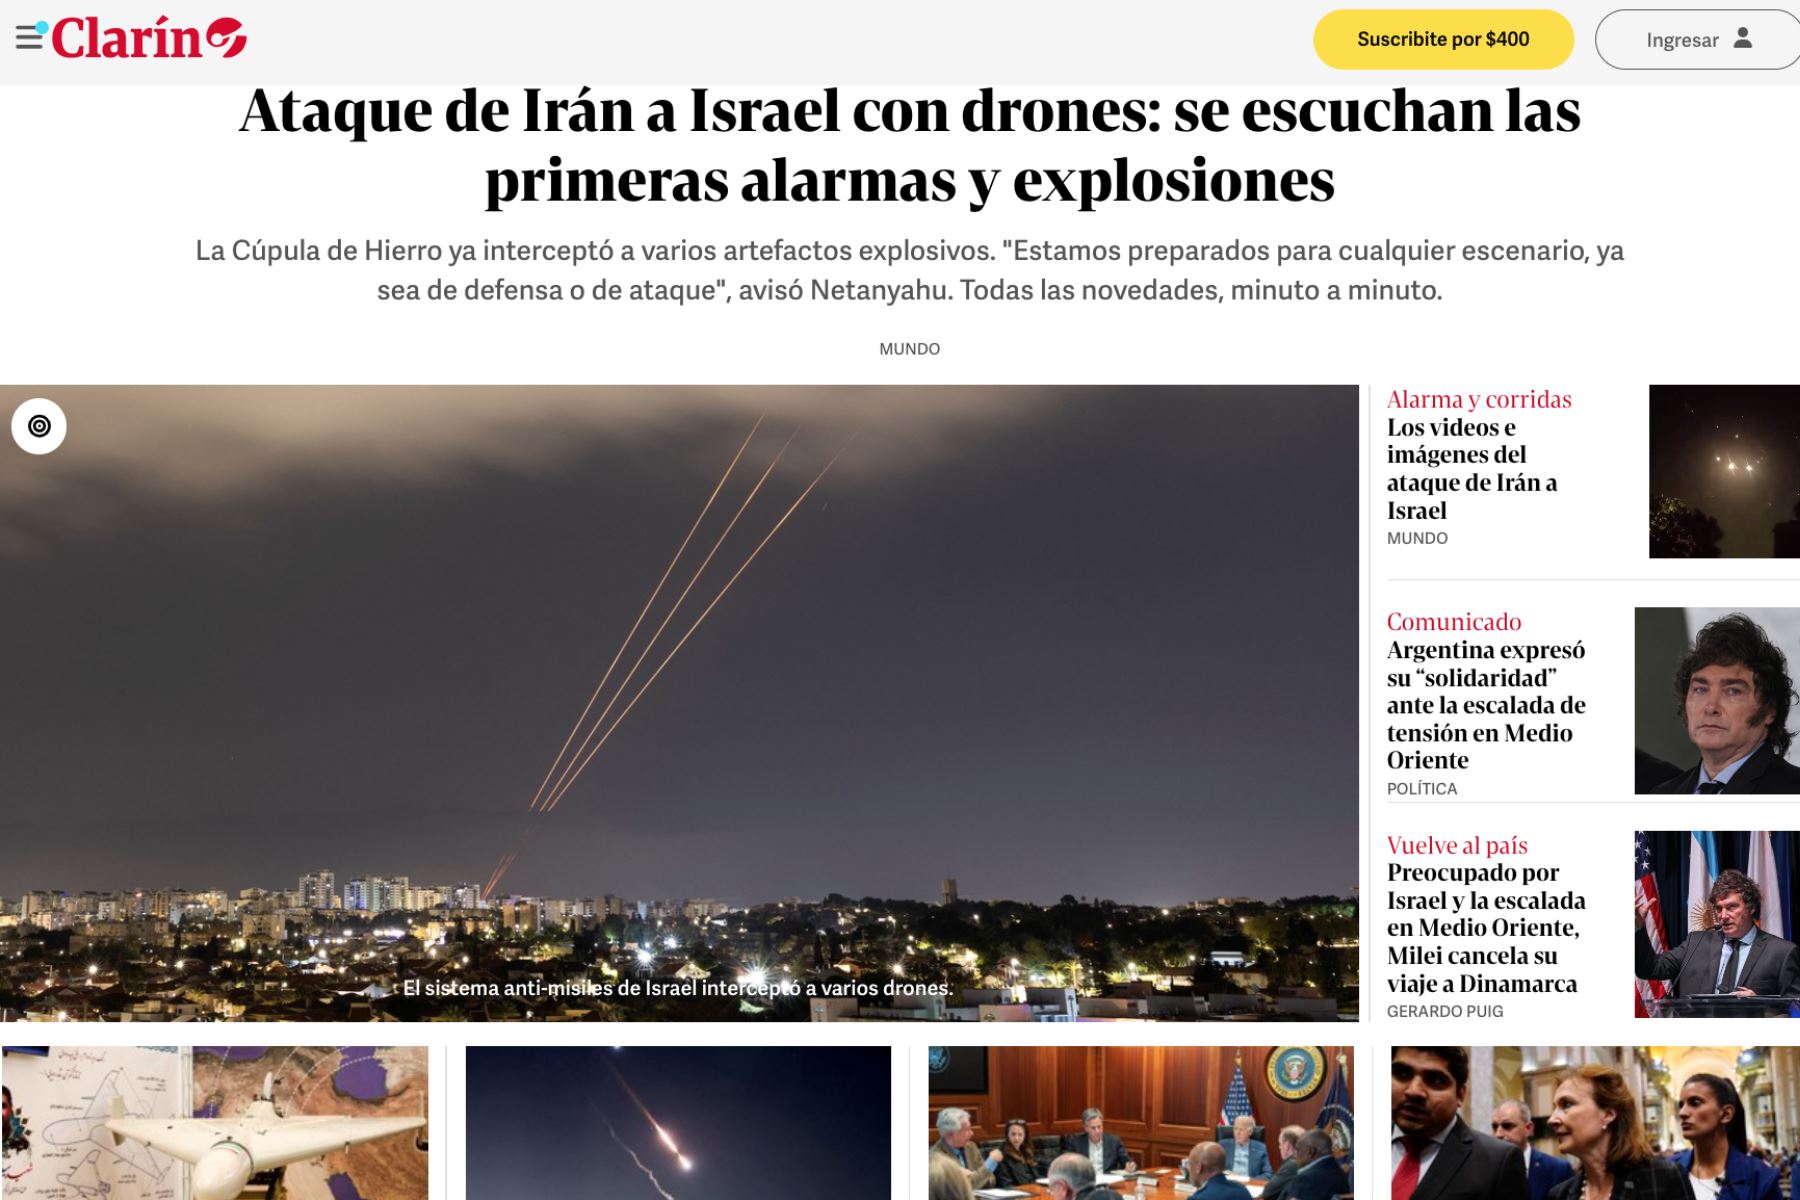 El Clarín. Así informan los medios internacionales acerca del ataque con drones de Irán contra Israel.